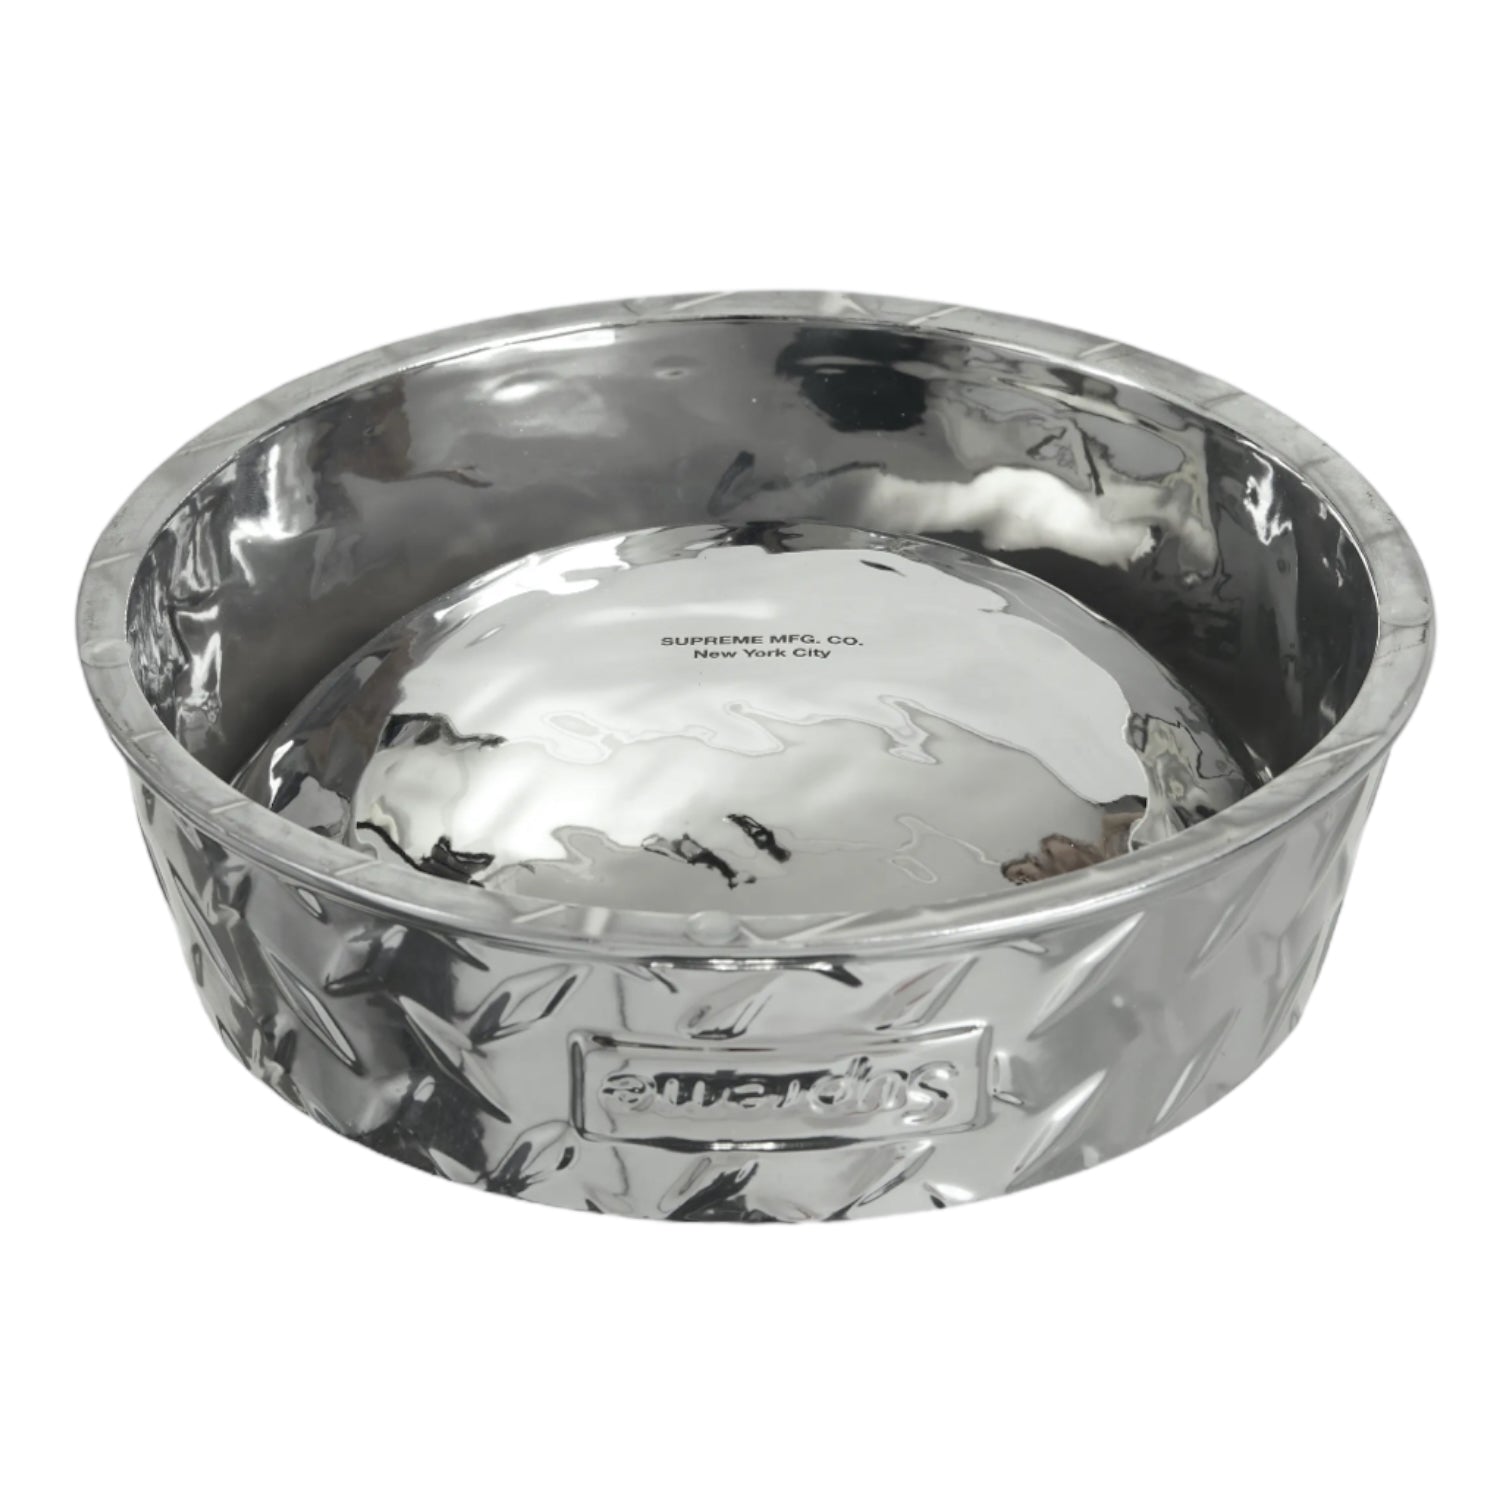 Supreme Diamond Plate Dog Bowl - Silver Pet Water Bowl